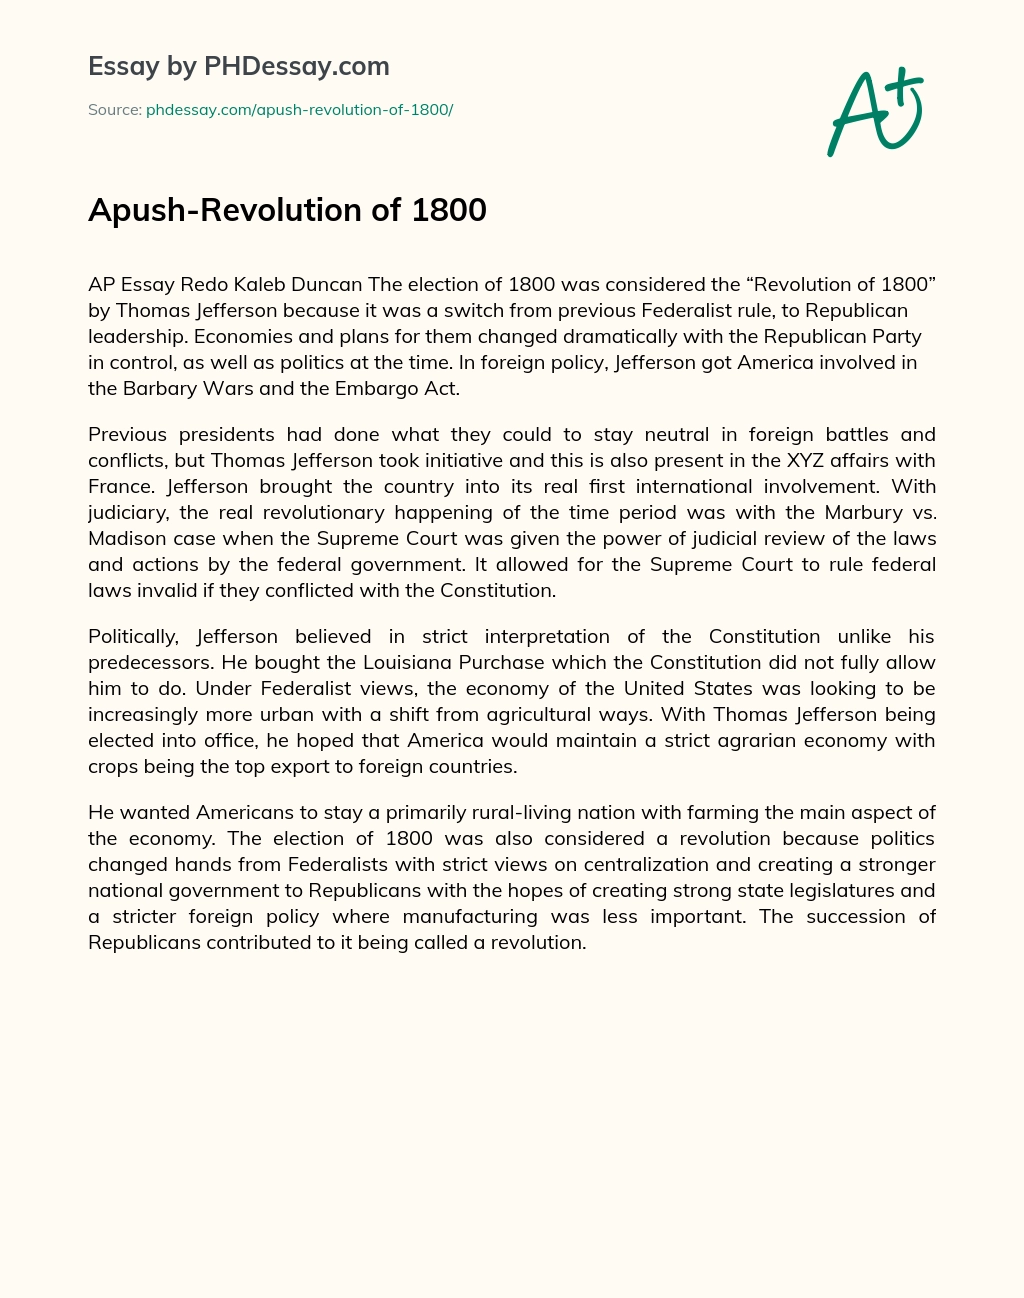 Apush-Revolution of 1800 essay